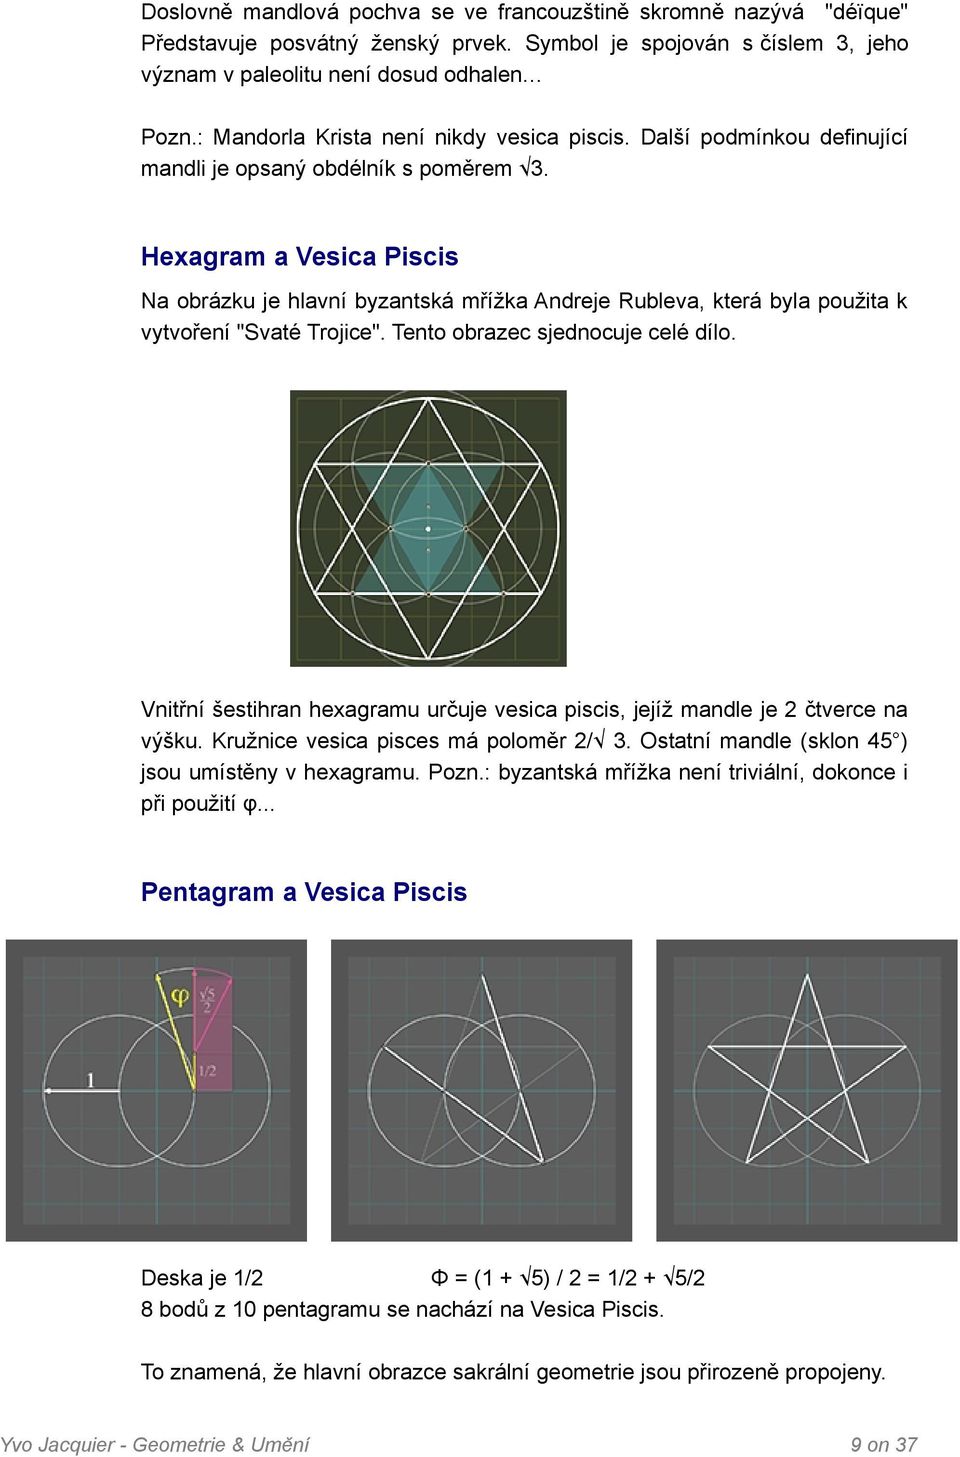 Hexagram a Vesica Piscis Na obrázku je hlavní byzantská mřížka Andreje Rubleva, která byla použita k vytvoření "Svaté Trojice". Tento obrazec sjednocuje celé dílo.